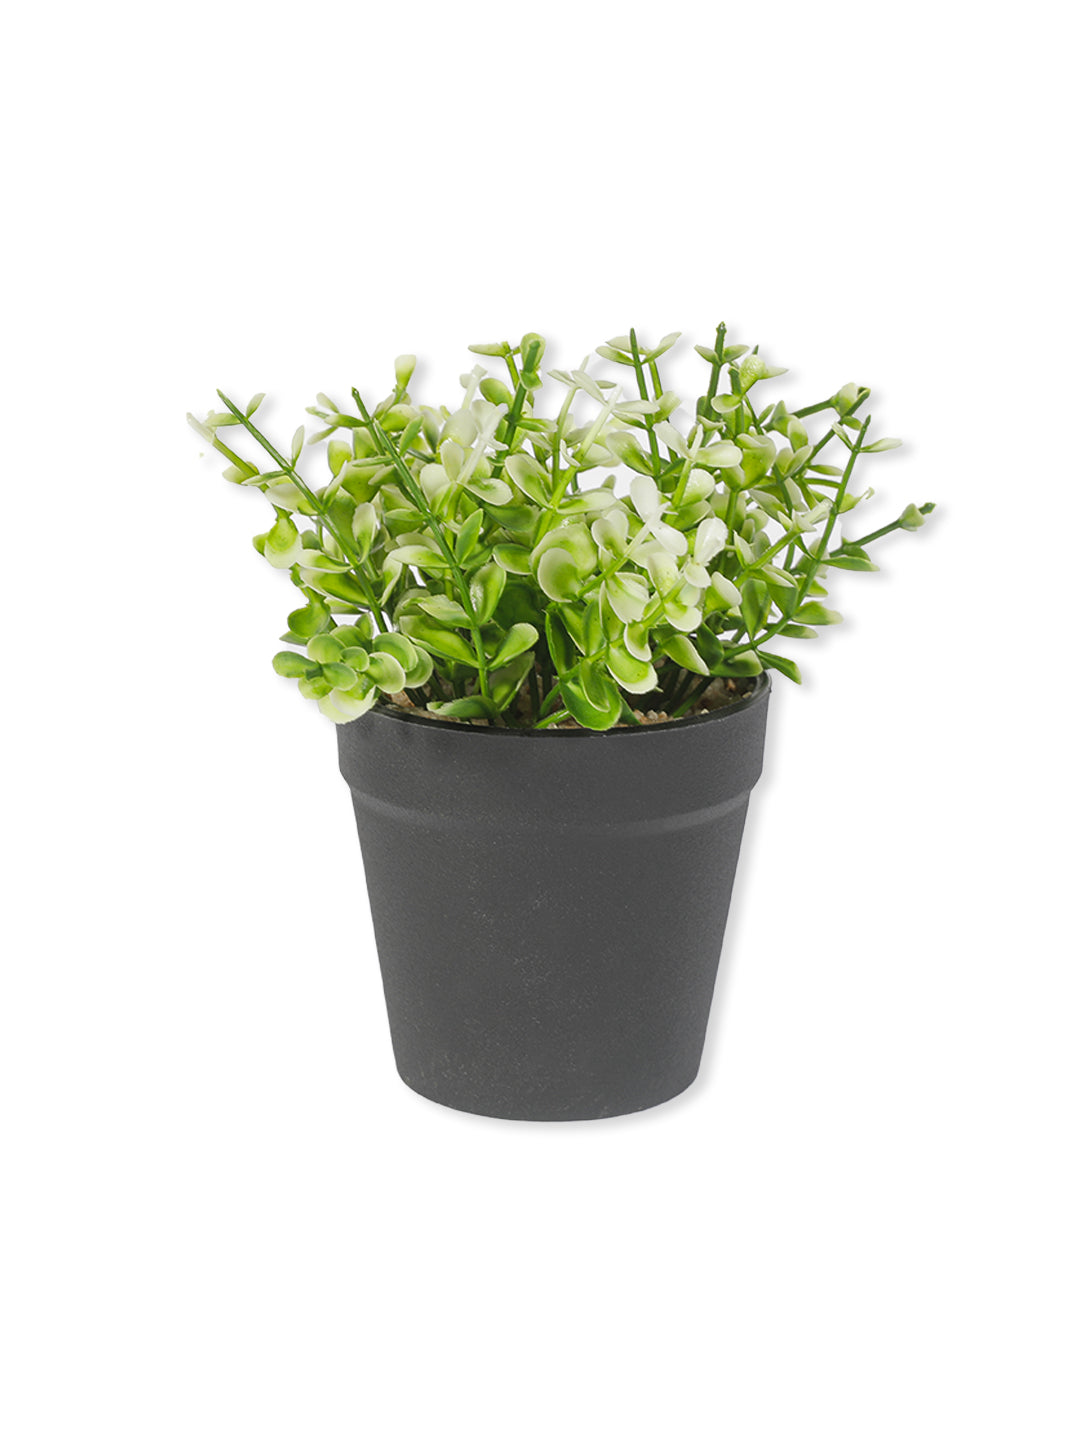 VON CASA Artificial White Flower Potted Plant - Black Pot